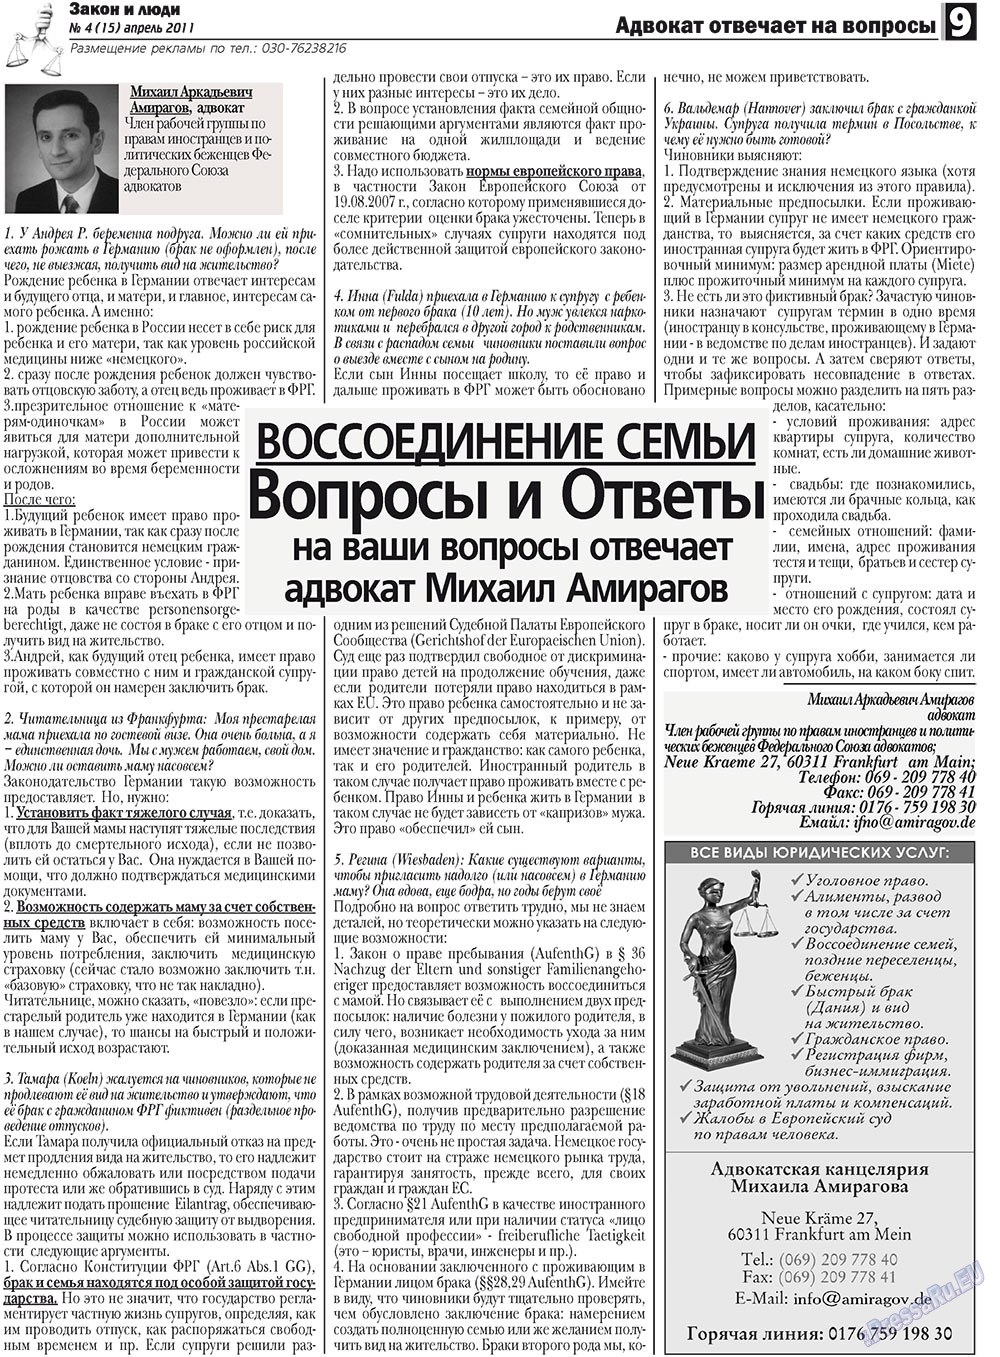 Закон и люди, газета. 2011 №4 стр.9